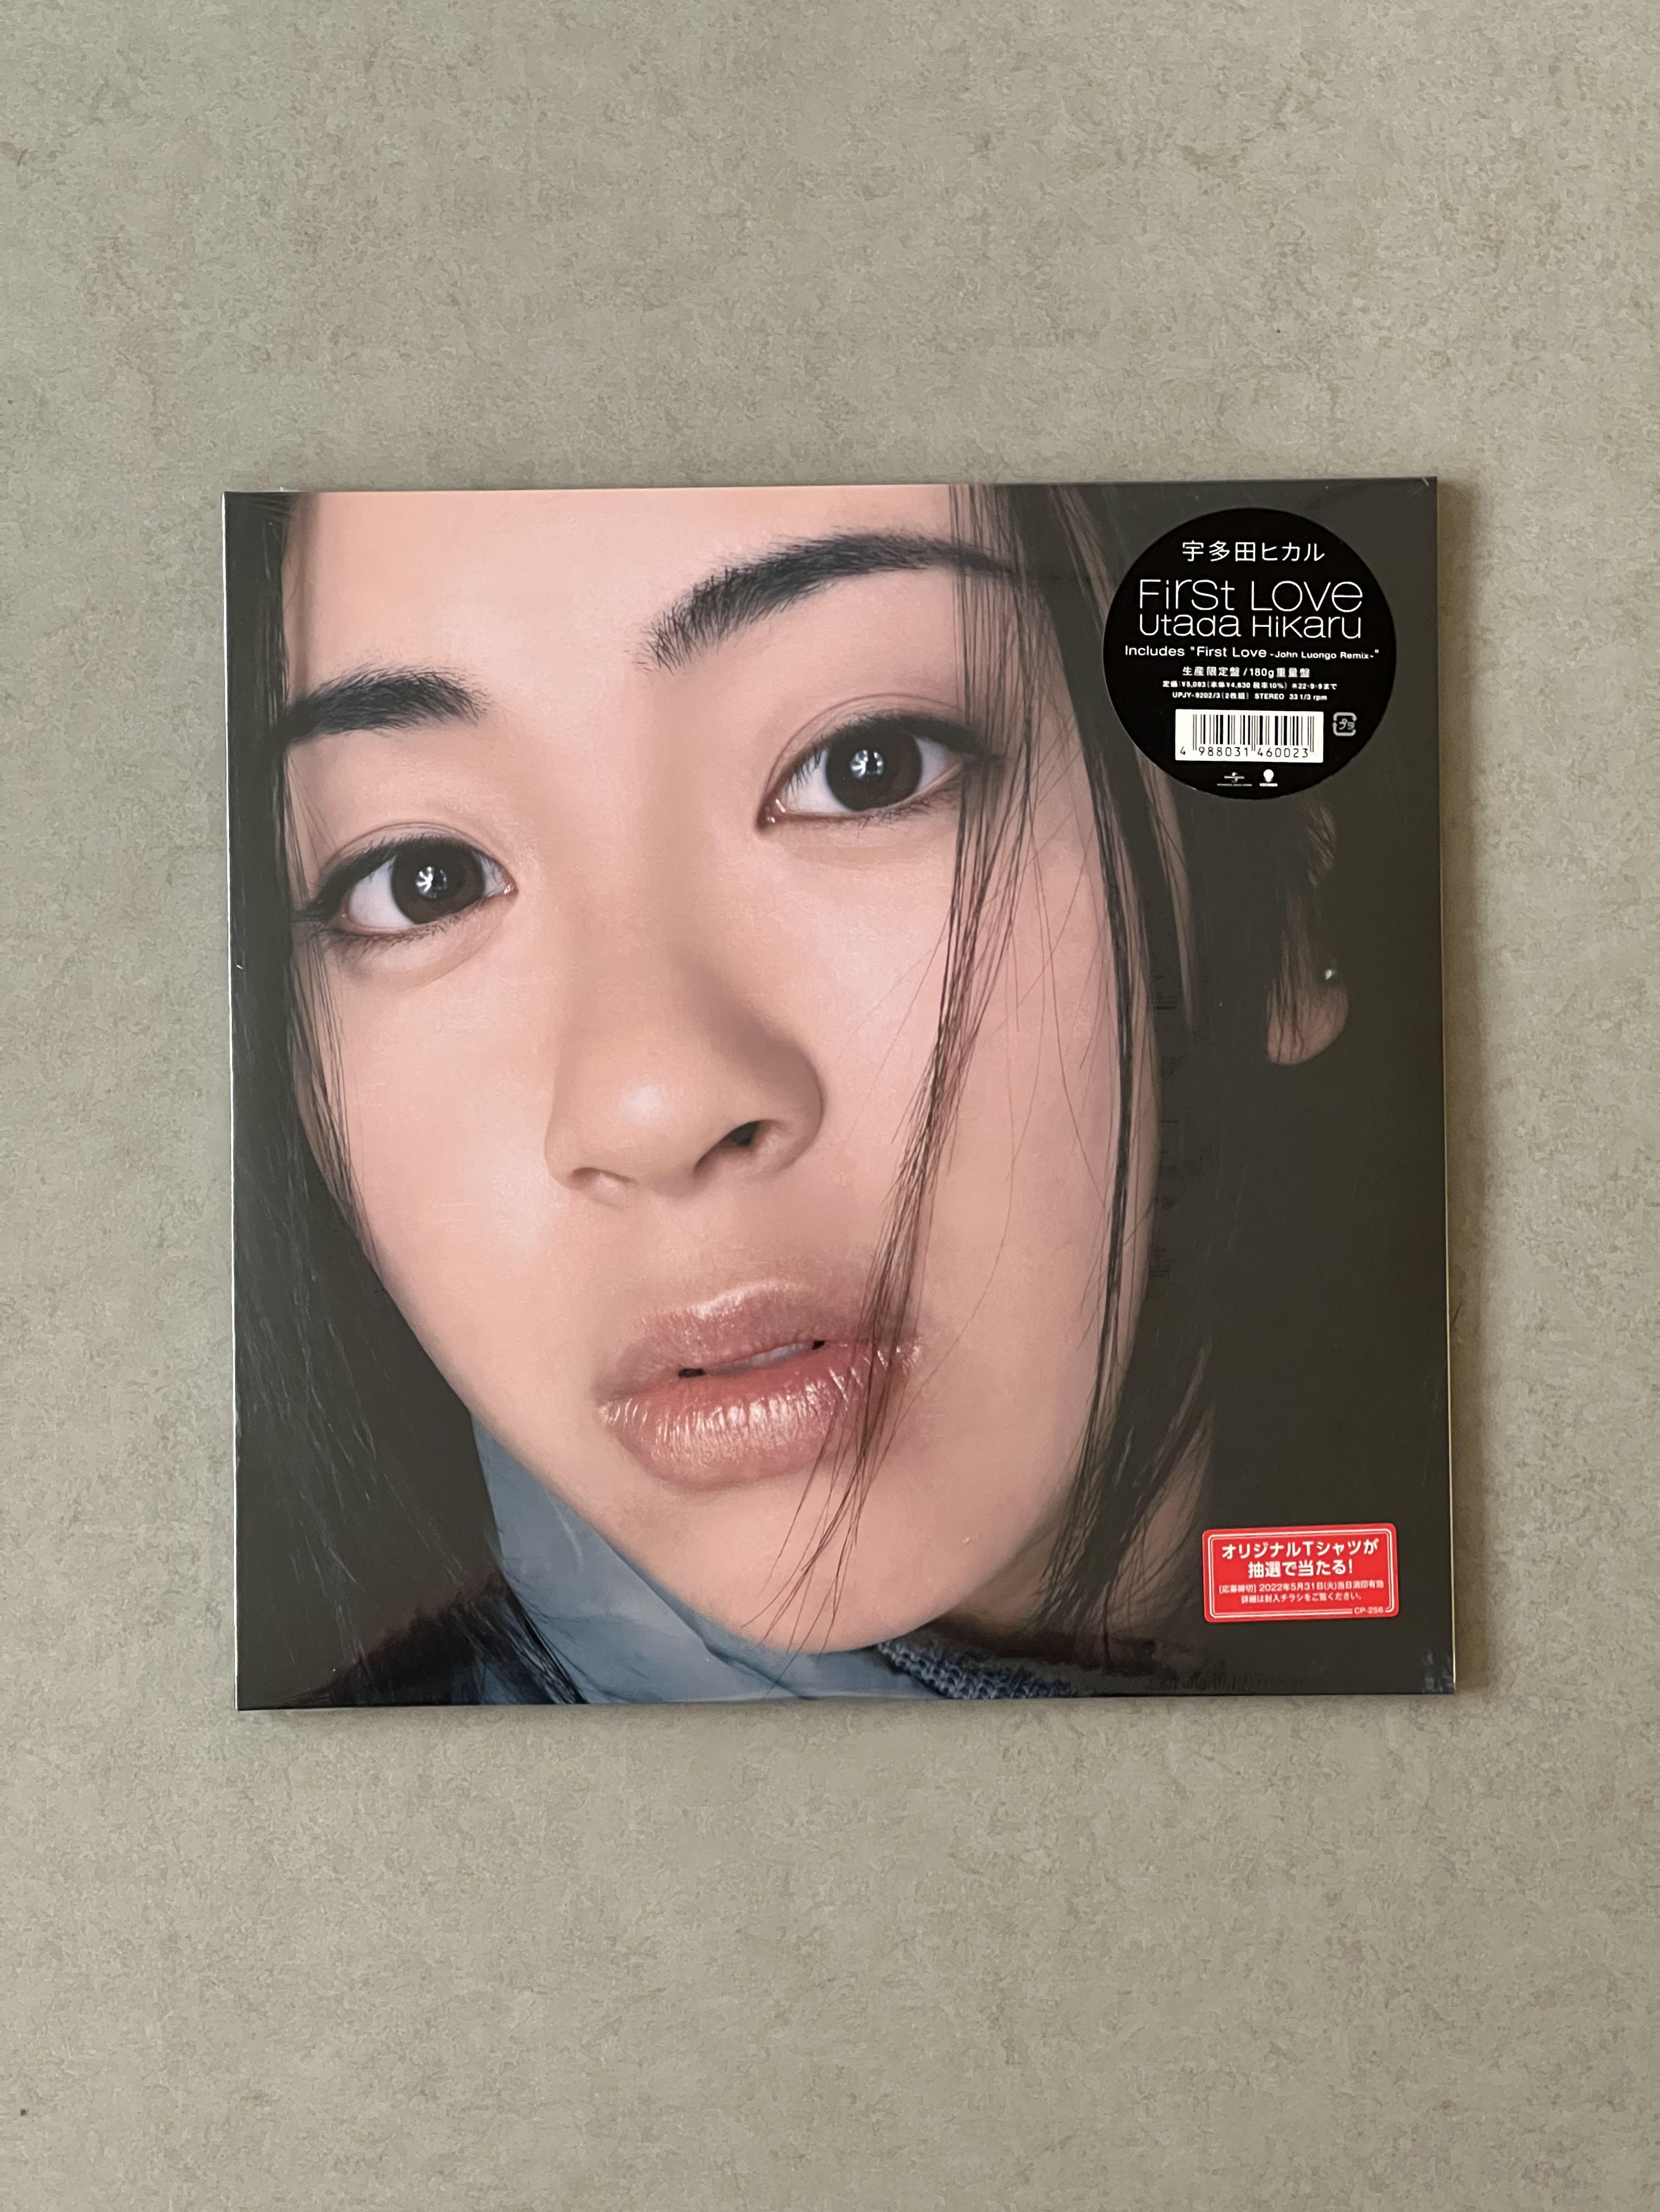 超安い 宇多田ヒカル First Love LP アナログ レコード オリジナル盤 ...